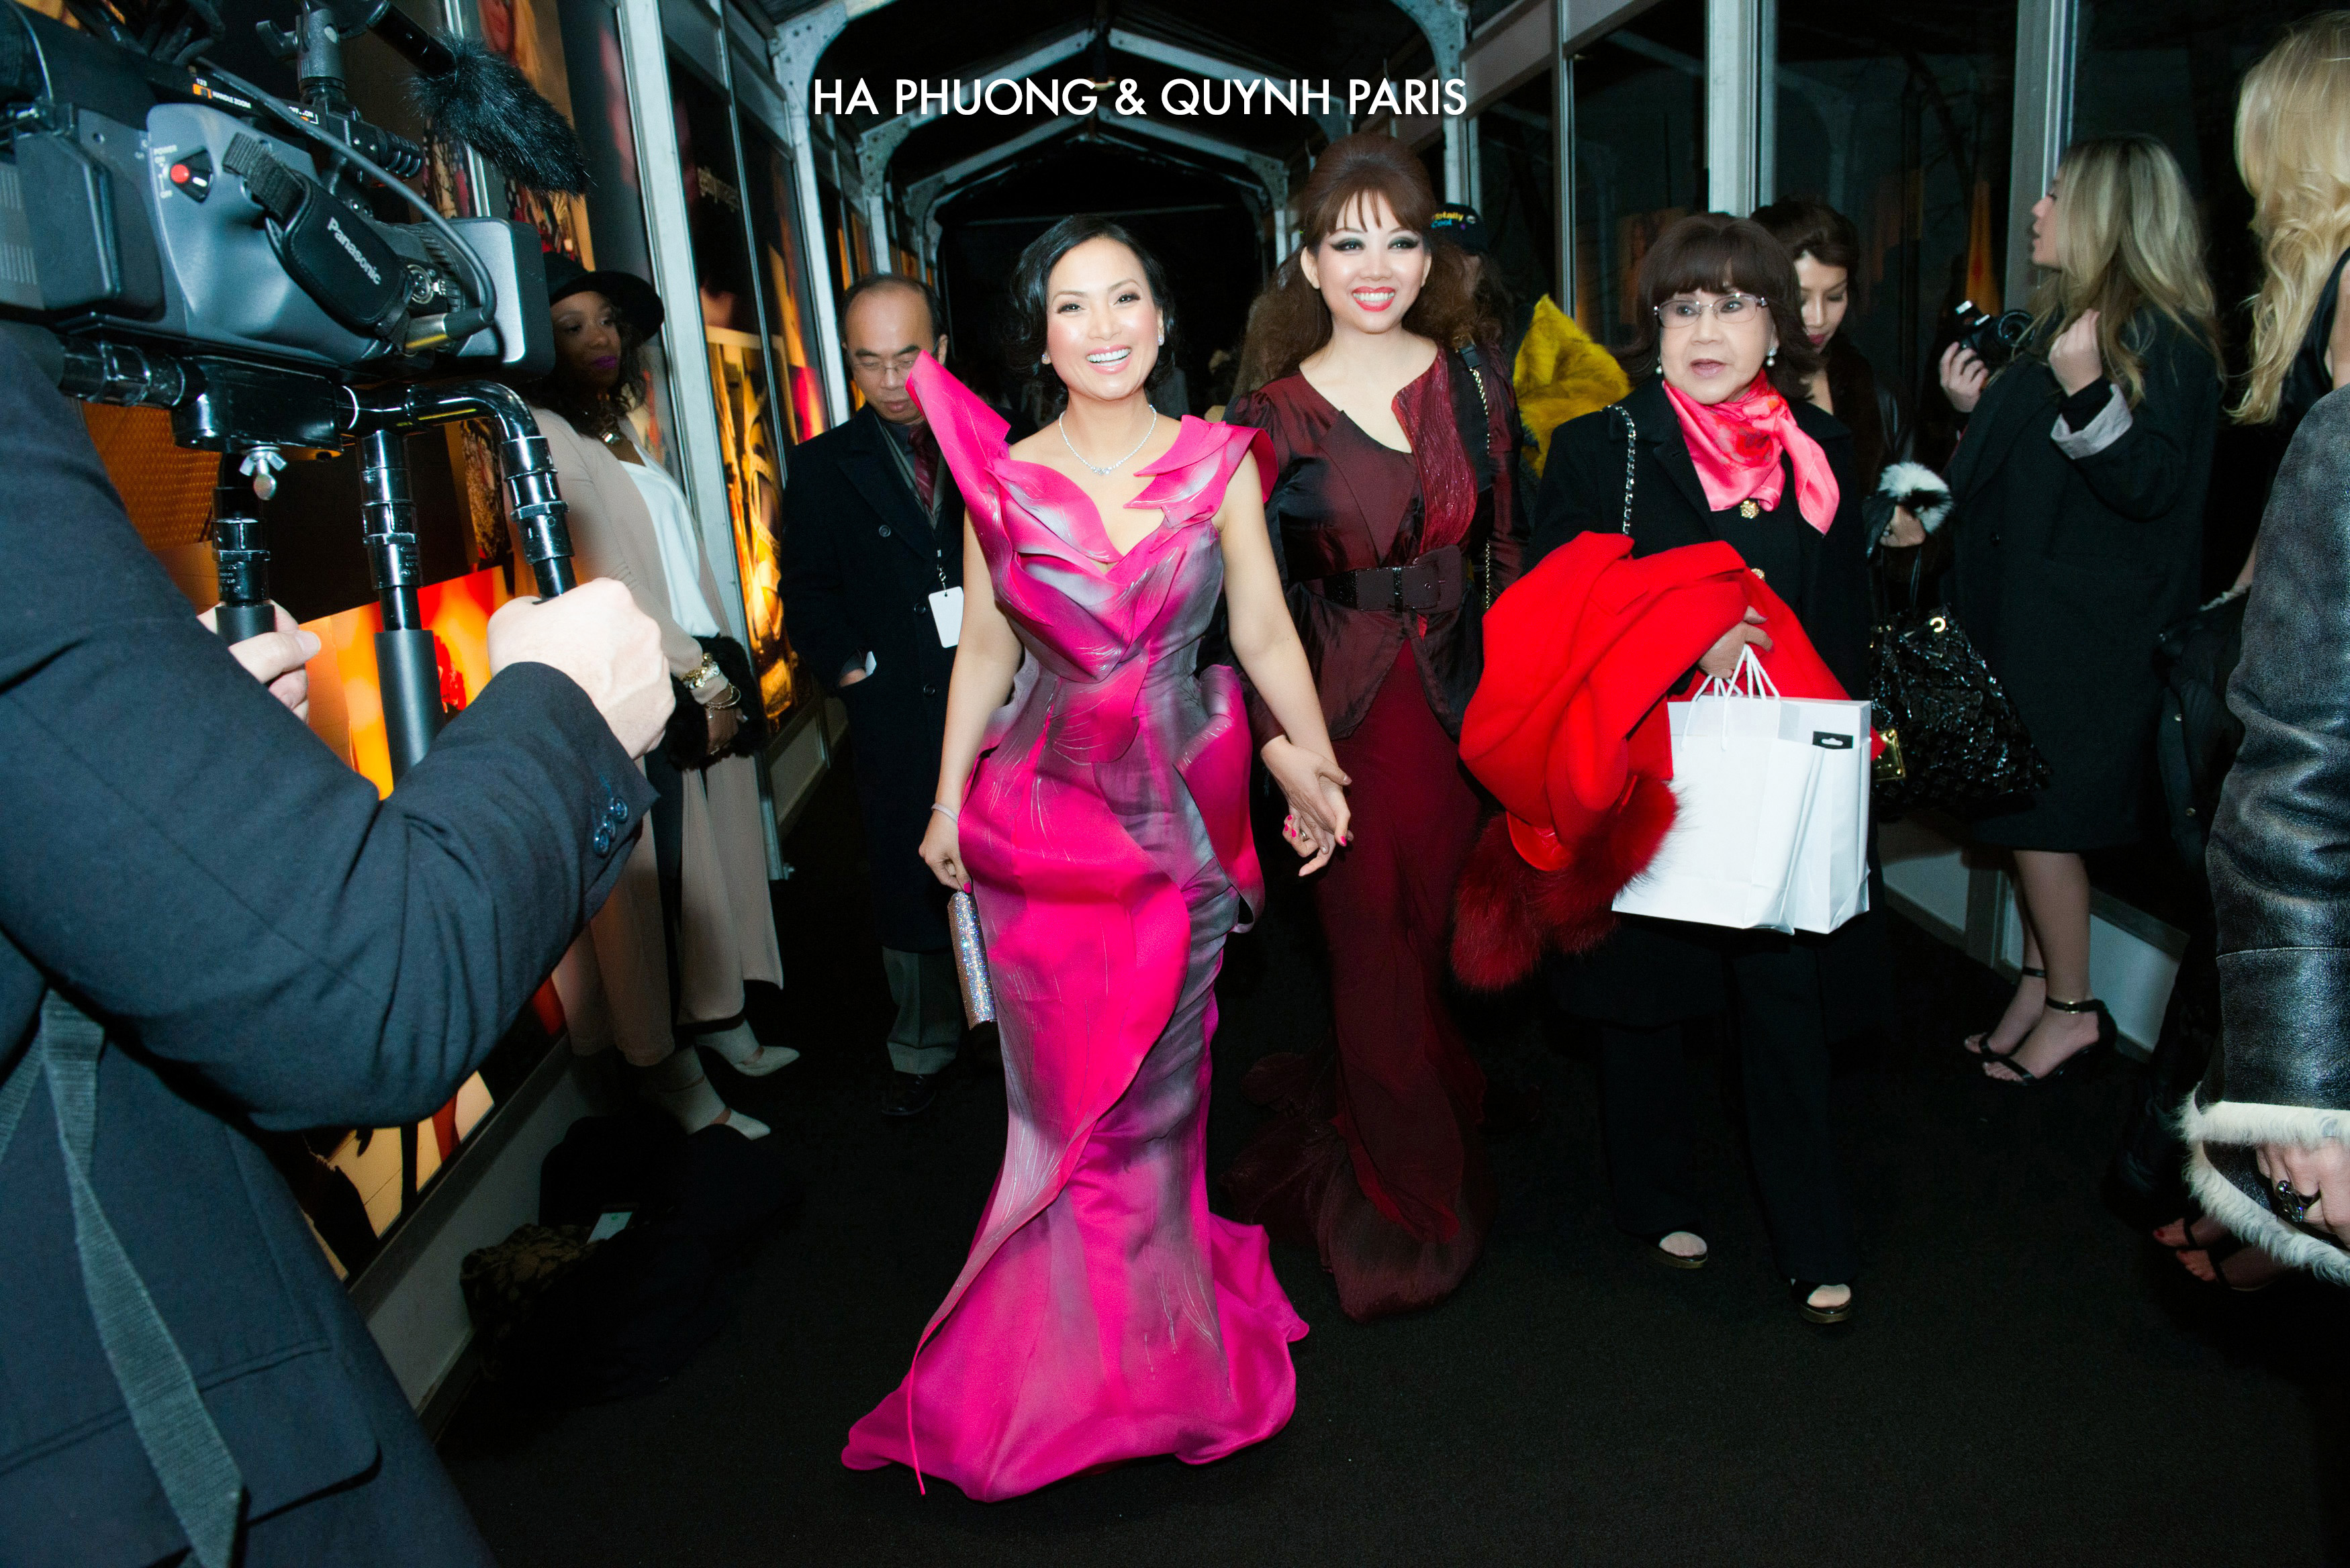 Ha Phuong& Quynh paris at NY Fashion week 2015. www.haphuongworld.com www.haphuong.global haphuongfanpage